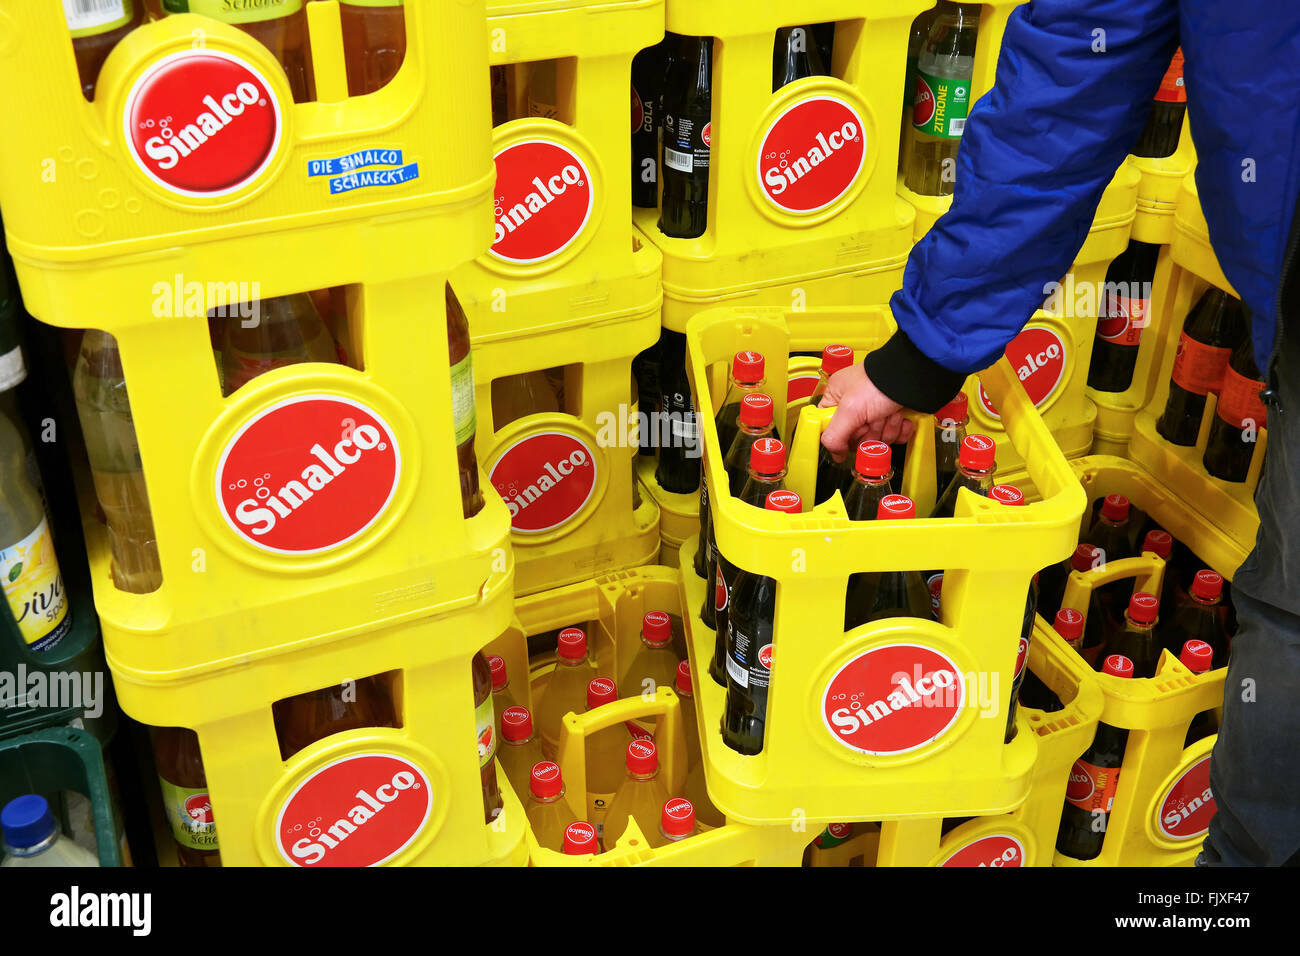 Sinalco è un marchio popolare di bevande non alcoliche Foto Stock